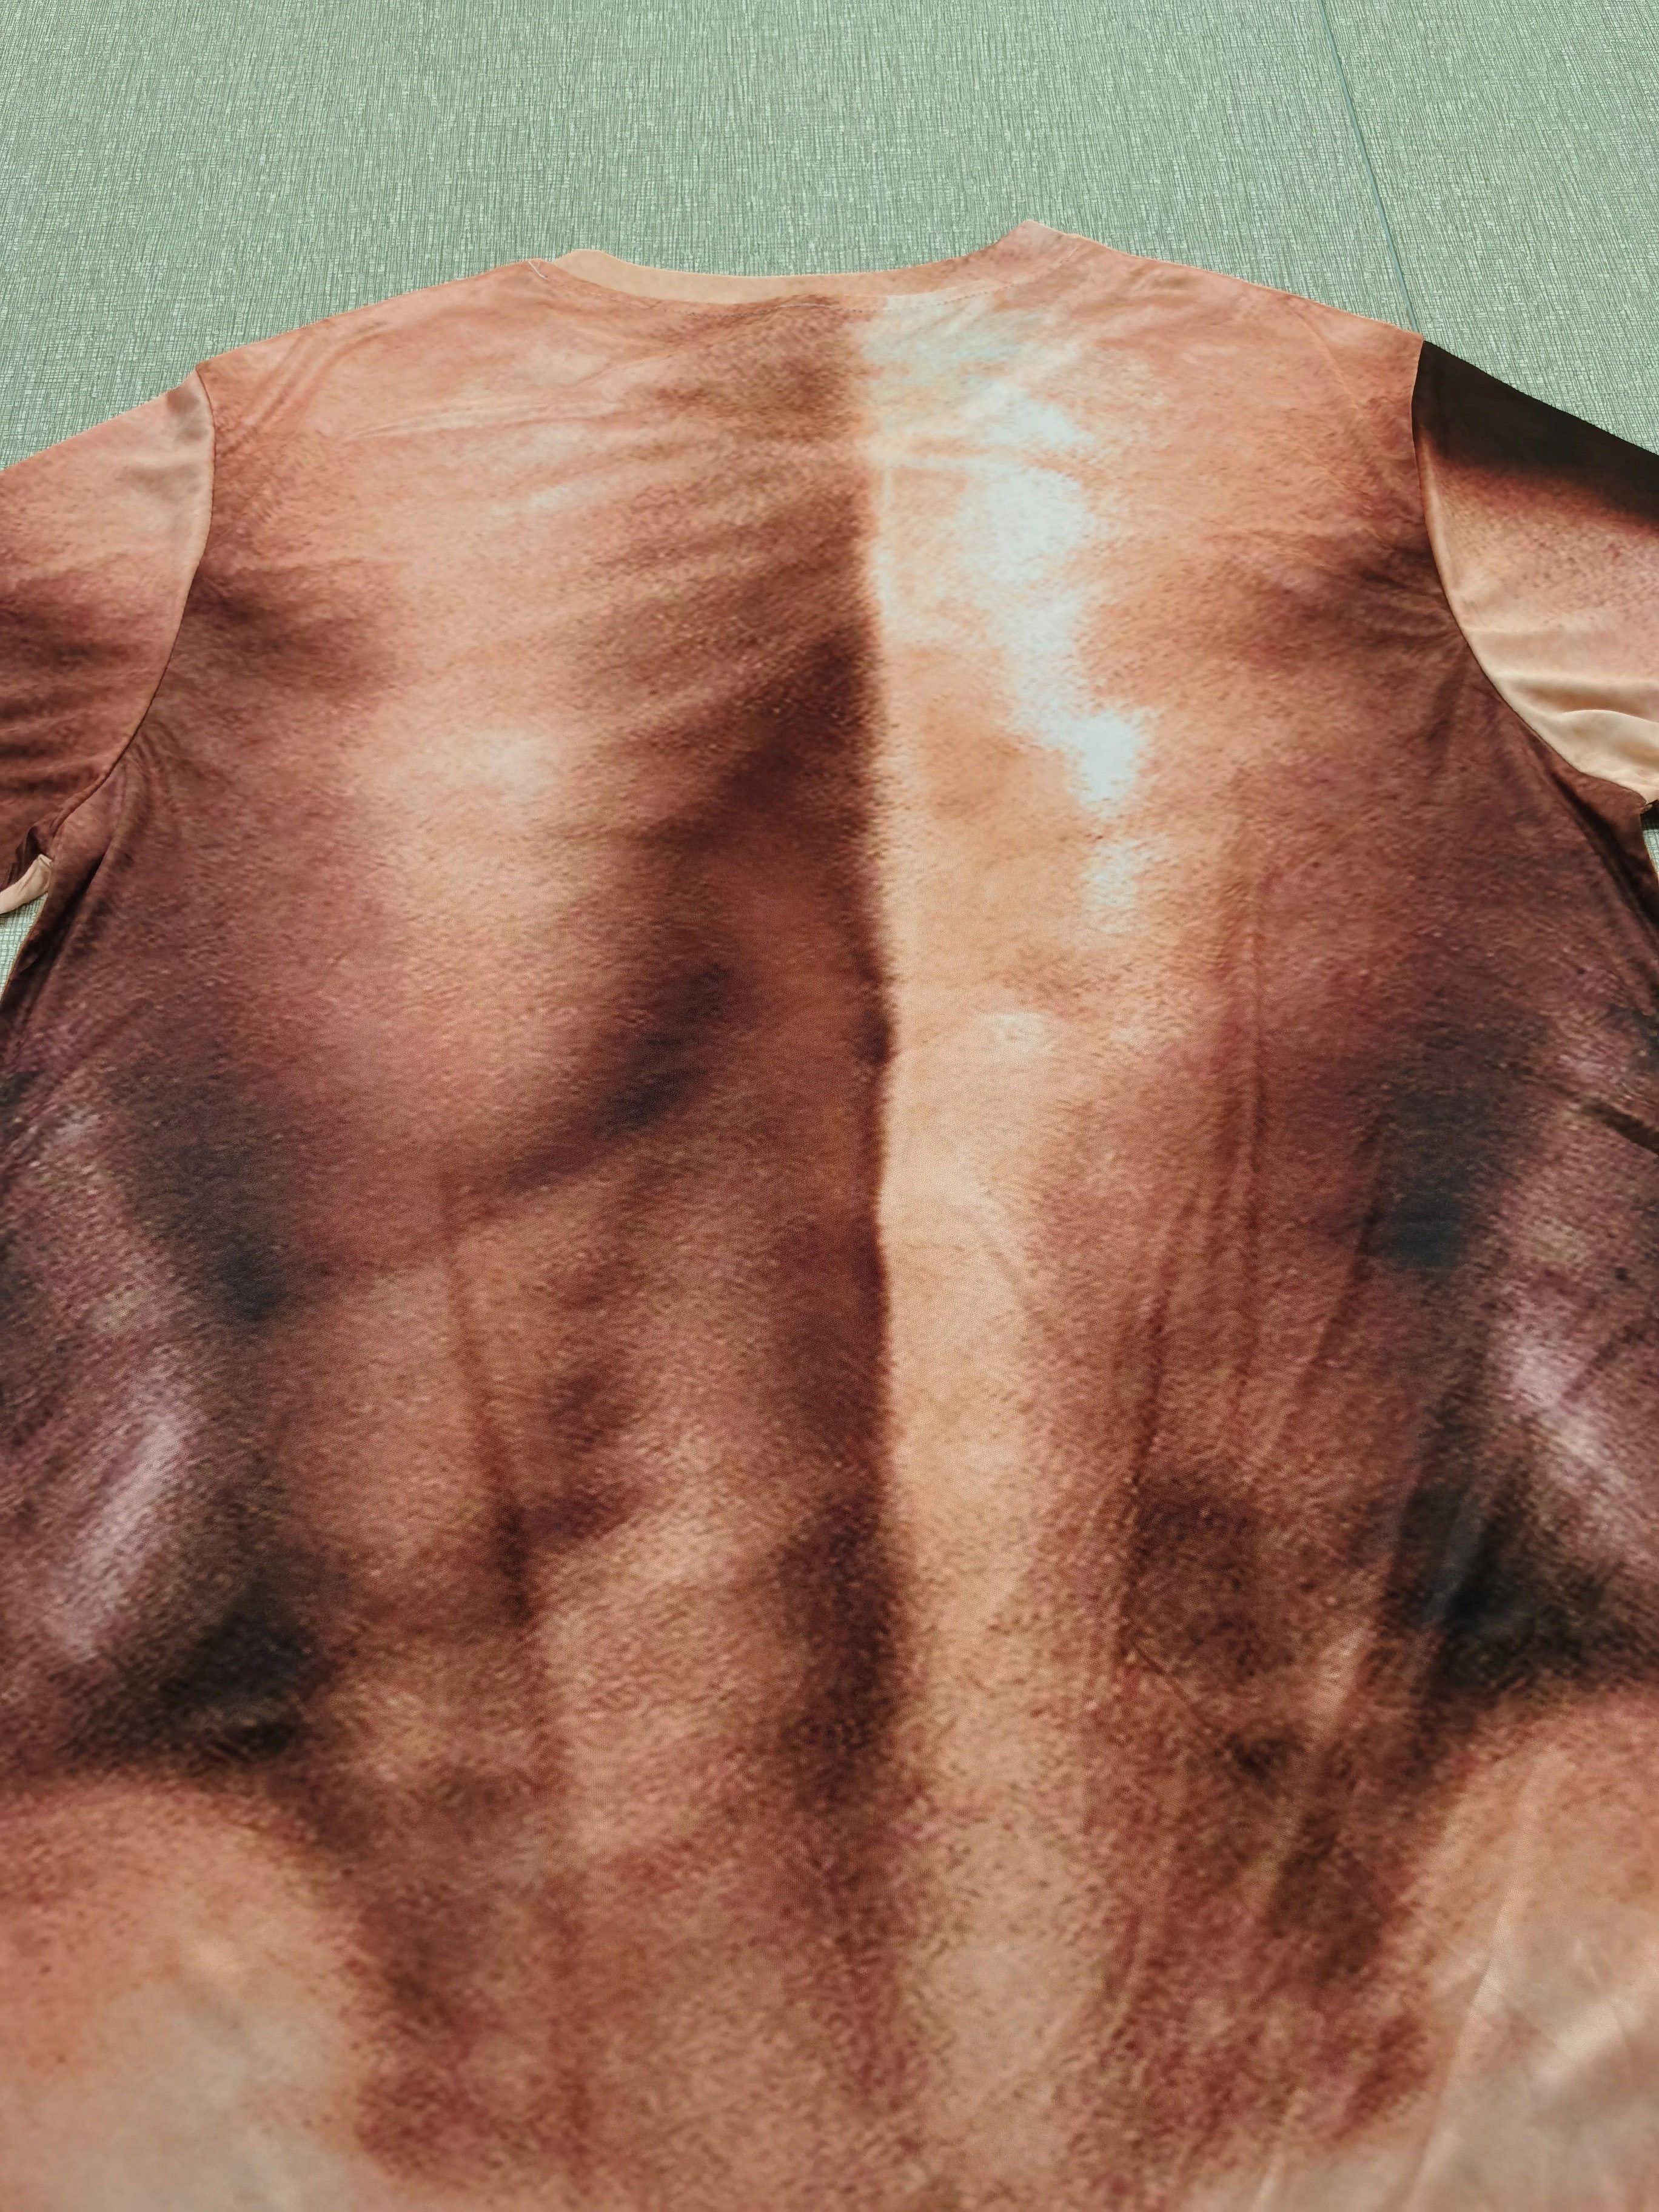 Body Skin Fake Muscle 3d Printing T Shirt Men Women Fashion Street